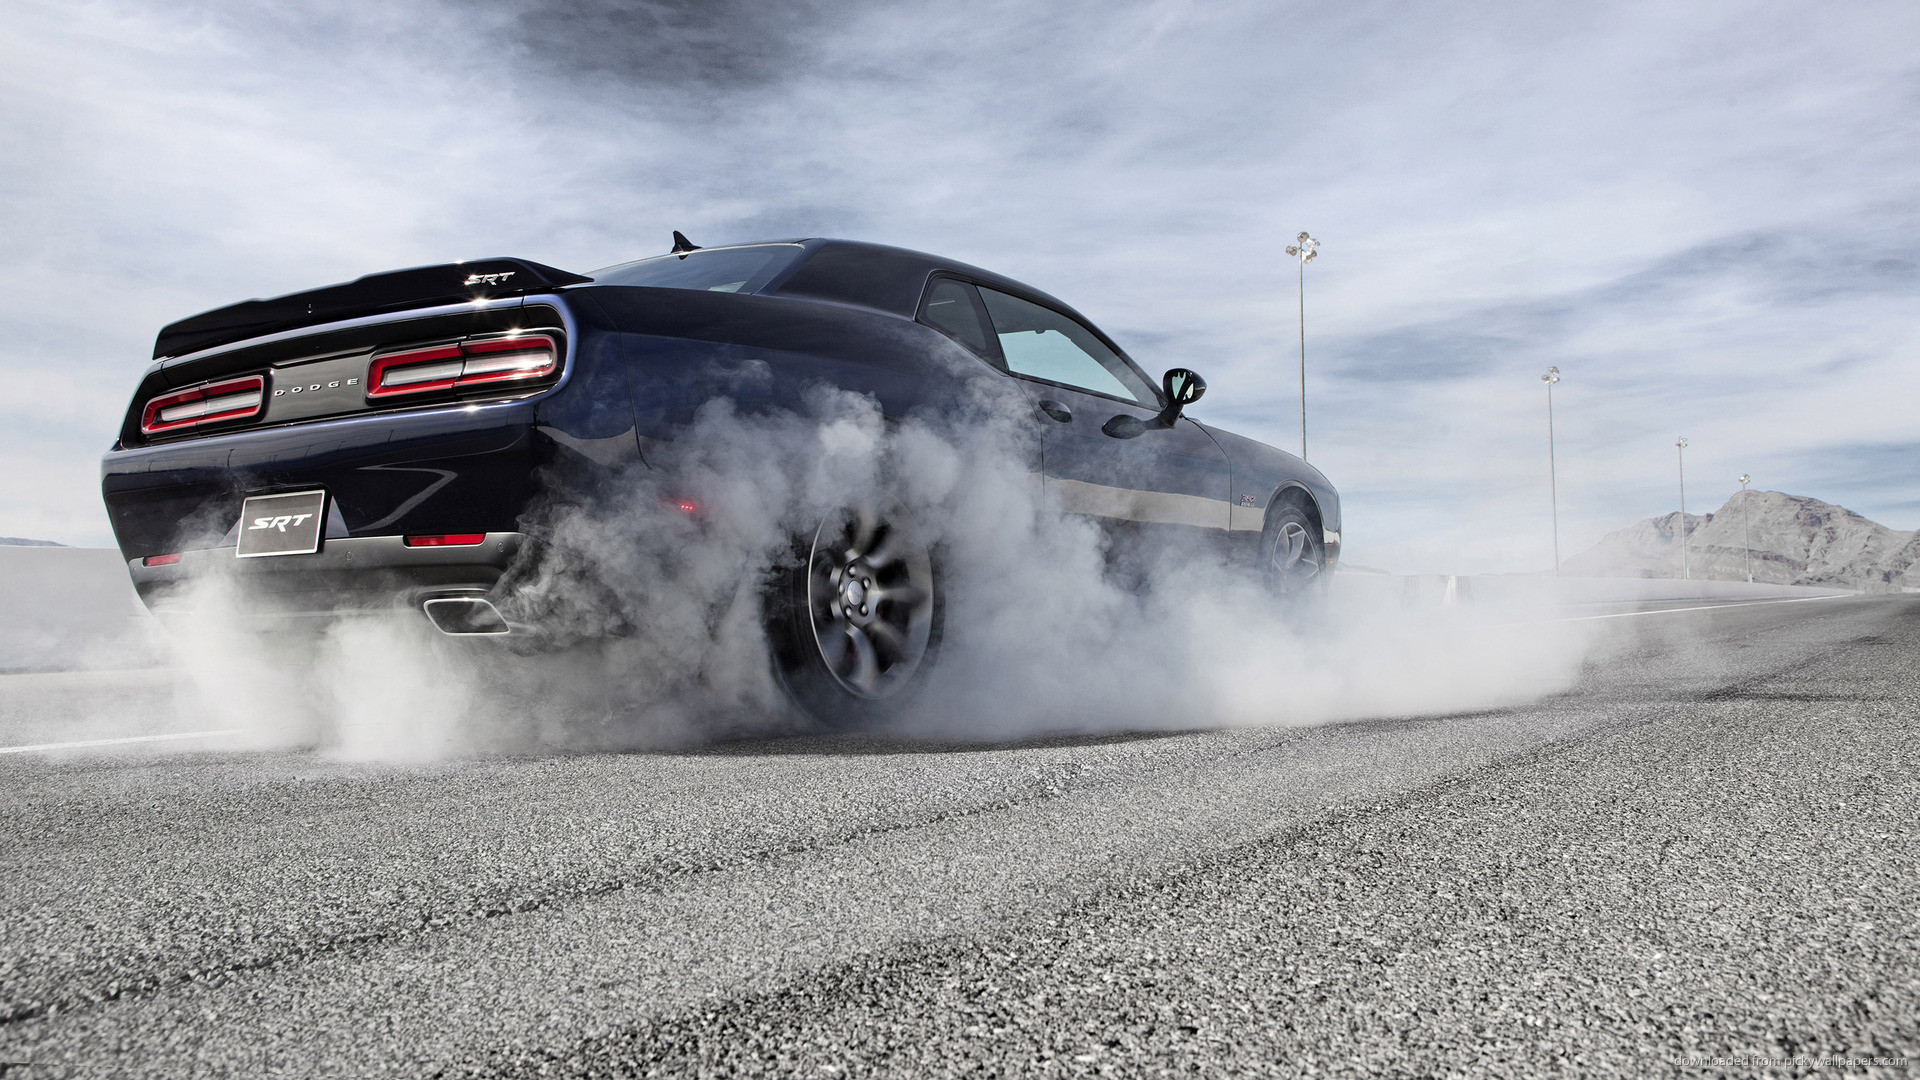 Download Dodge Challenger SRT Hellcat Stunning Performance Car Wallpaper   Wallpaperscom